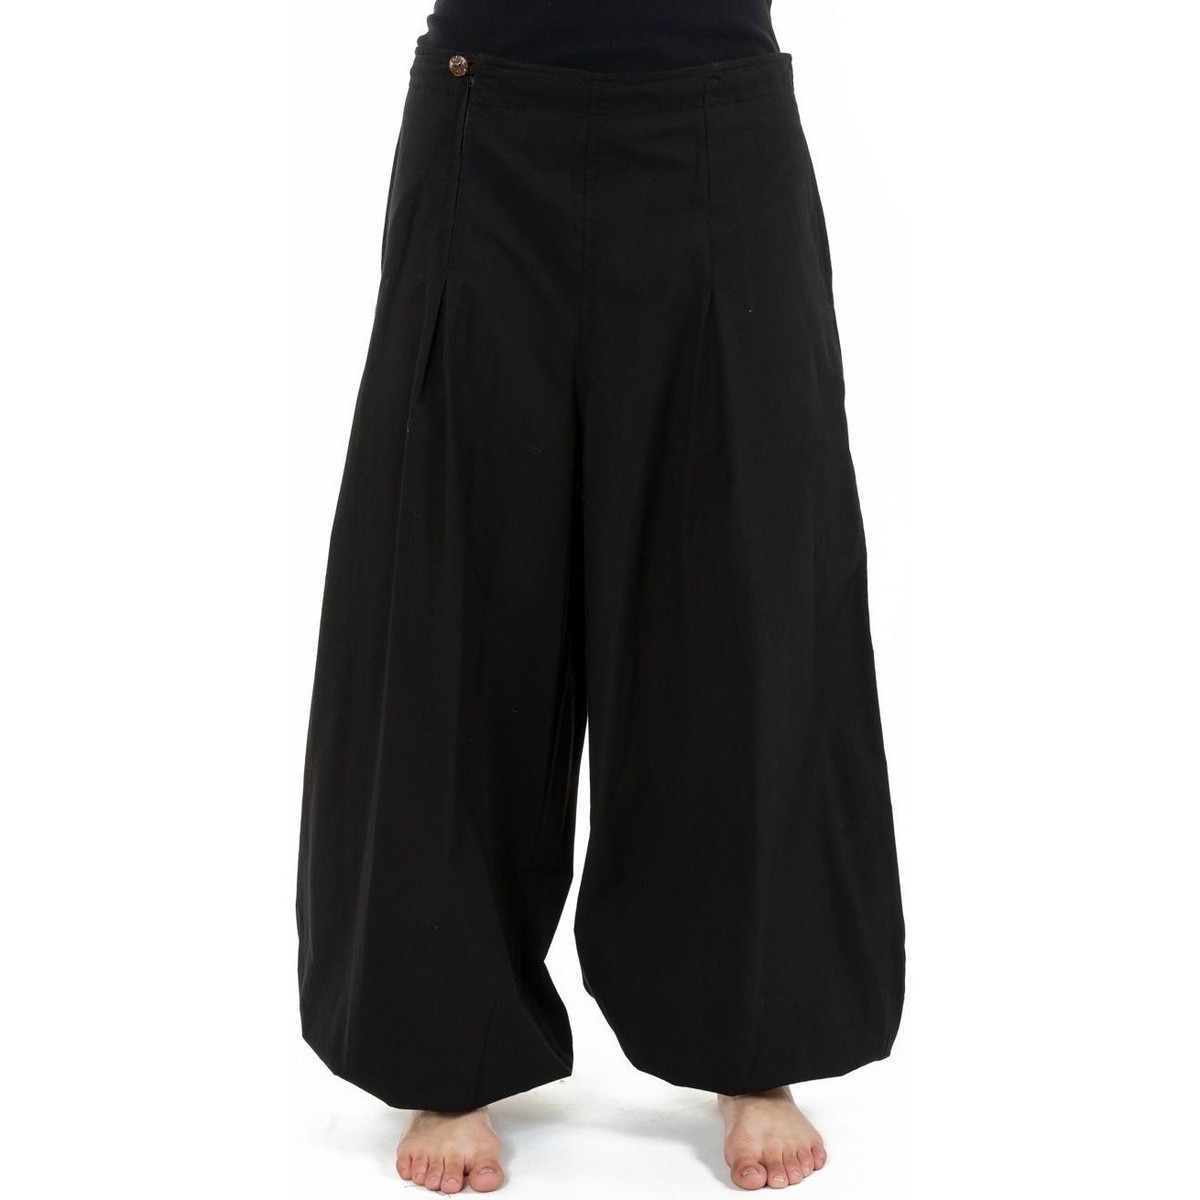 Vêtements Pantalons fluides / Sarouels Fantazia Pantalon ethnique large bouffant droit femme Damh Noir